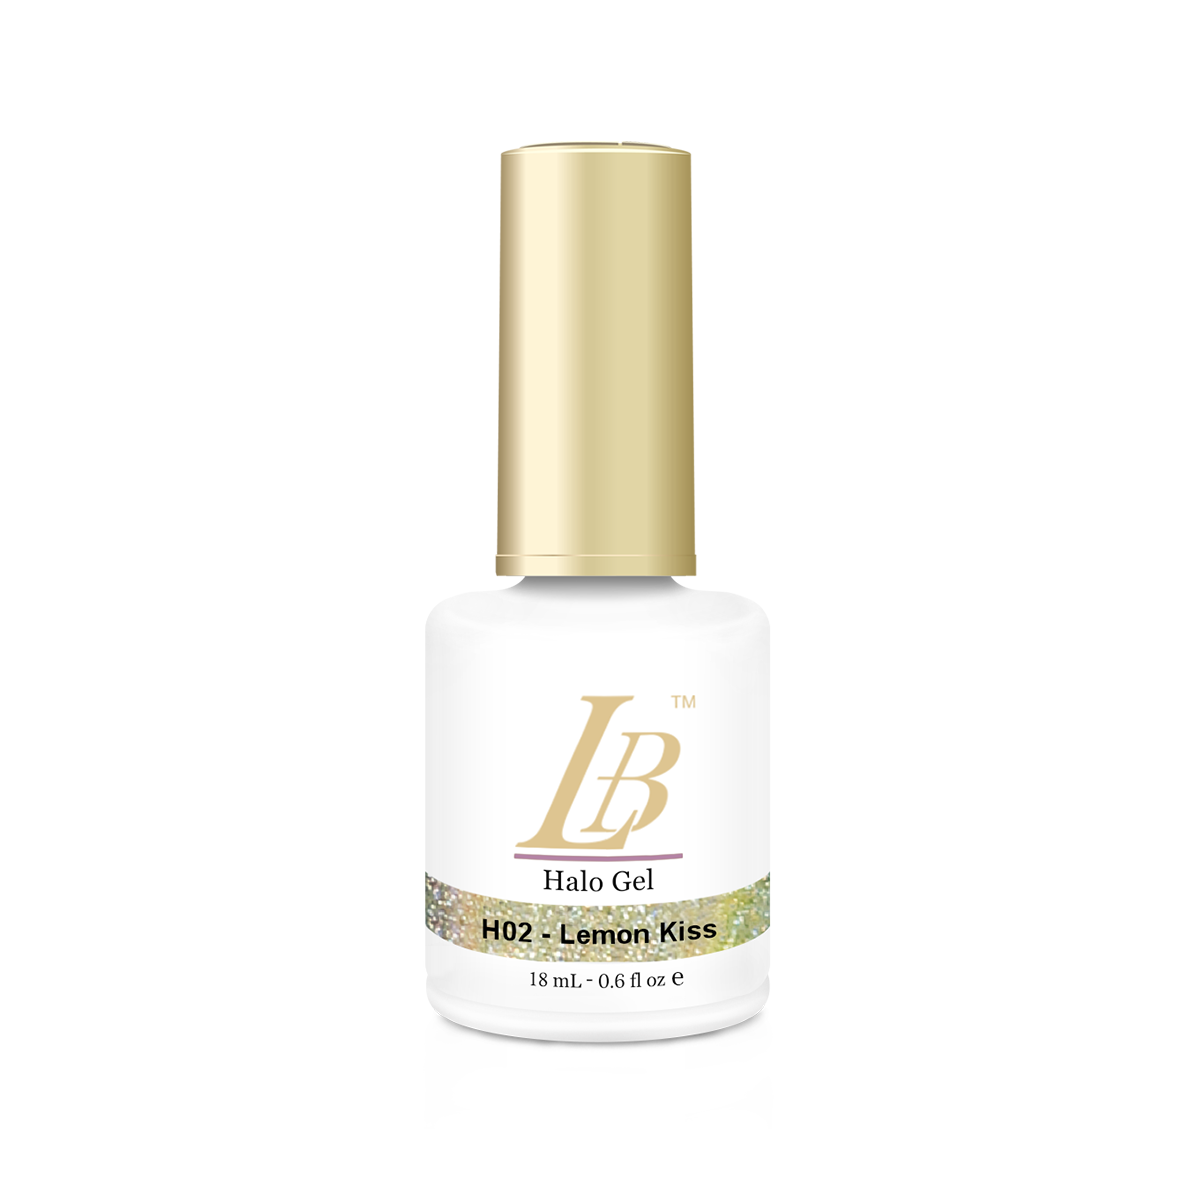 LB Halo Gel Color - H02 Lemon Kiss